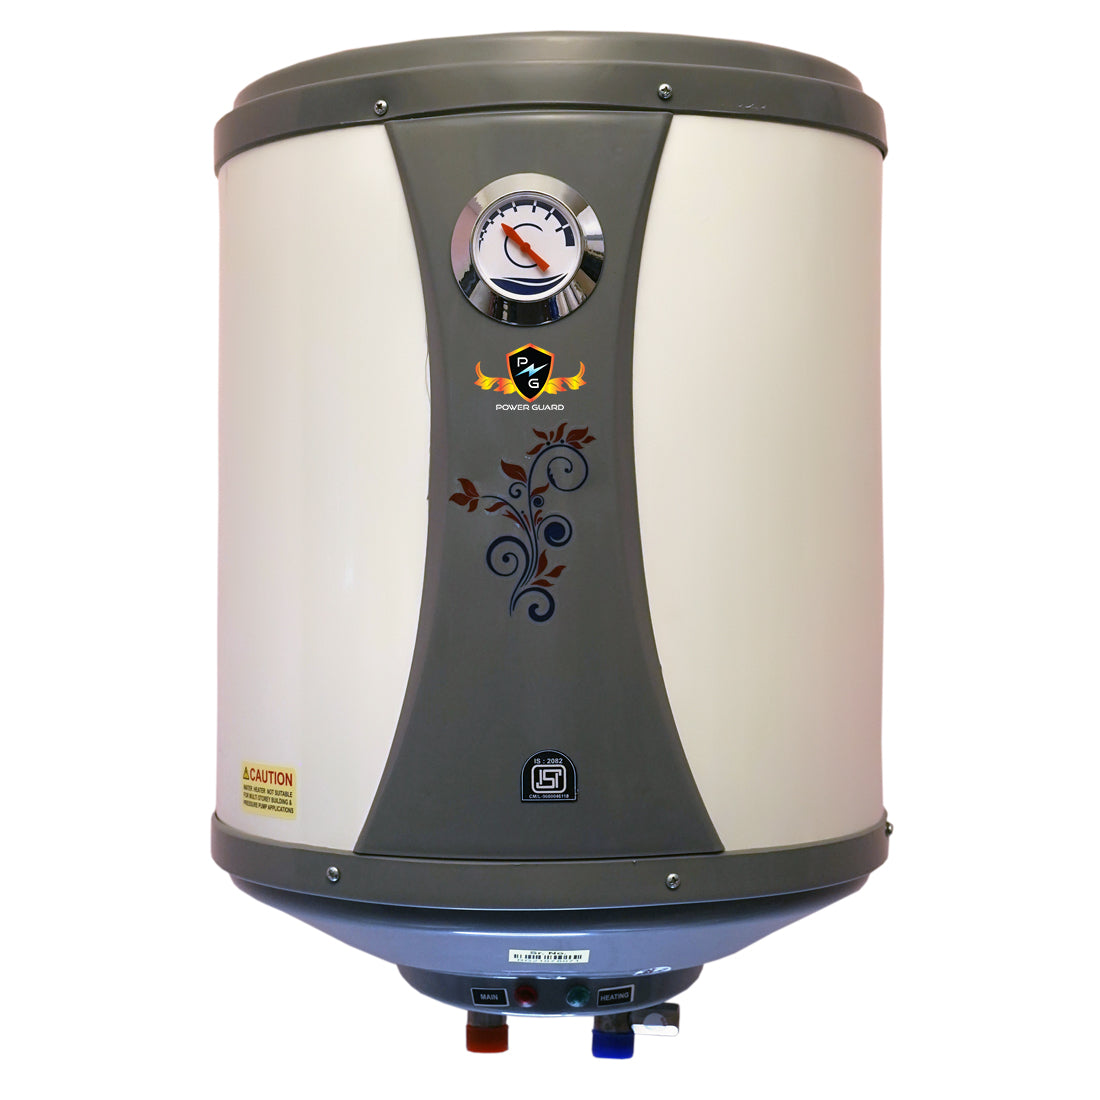 Water Geyser : Power Guard 10L Storage Water Heater Geyser (White, PG-DECO DELUXE-10)